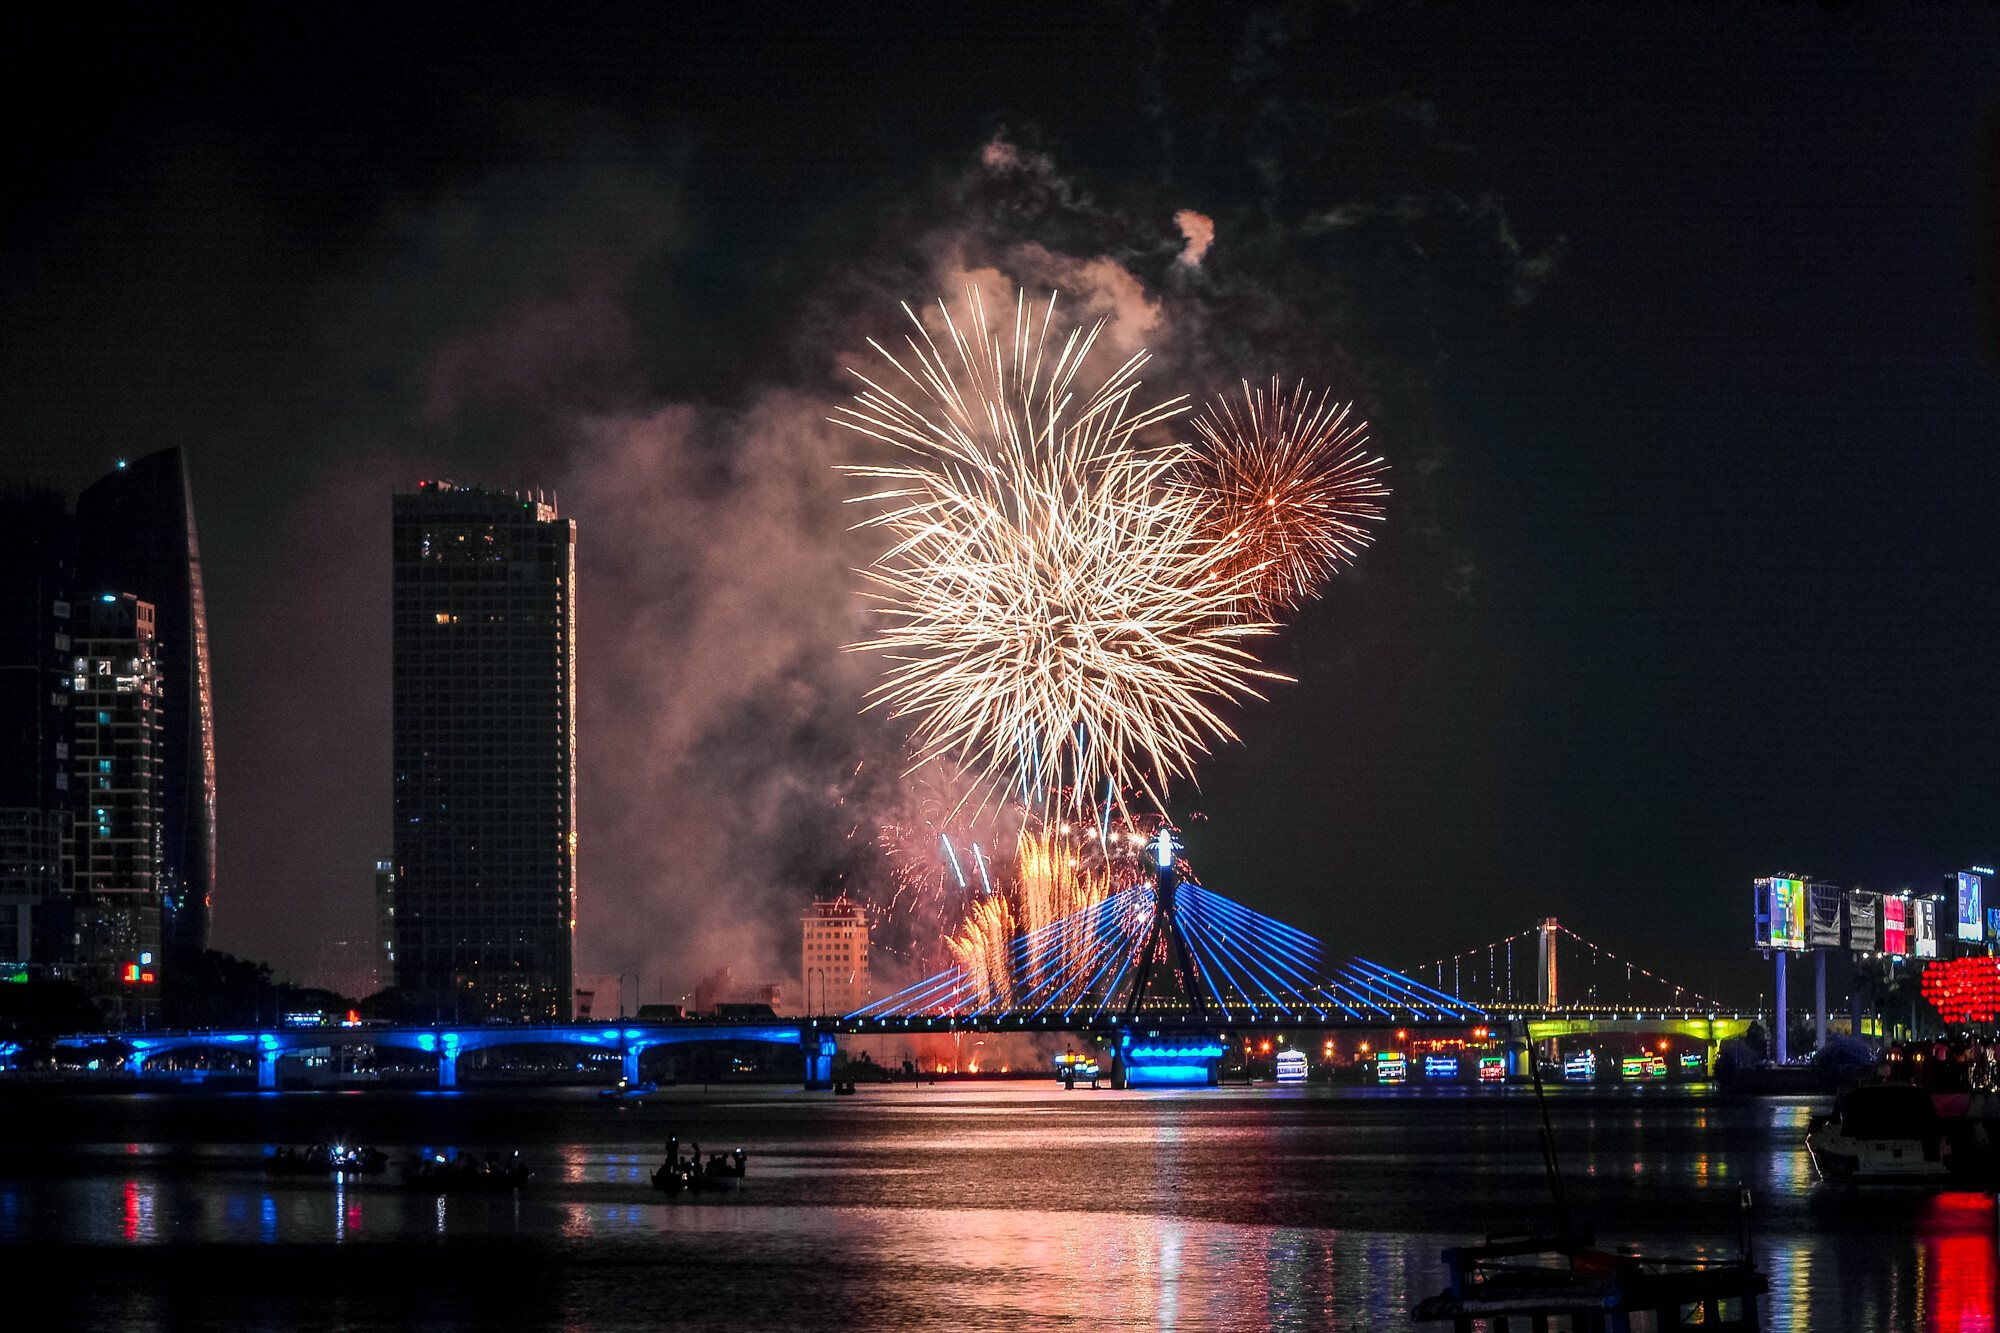 Da Nang international Fireworks festival